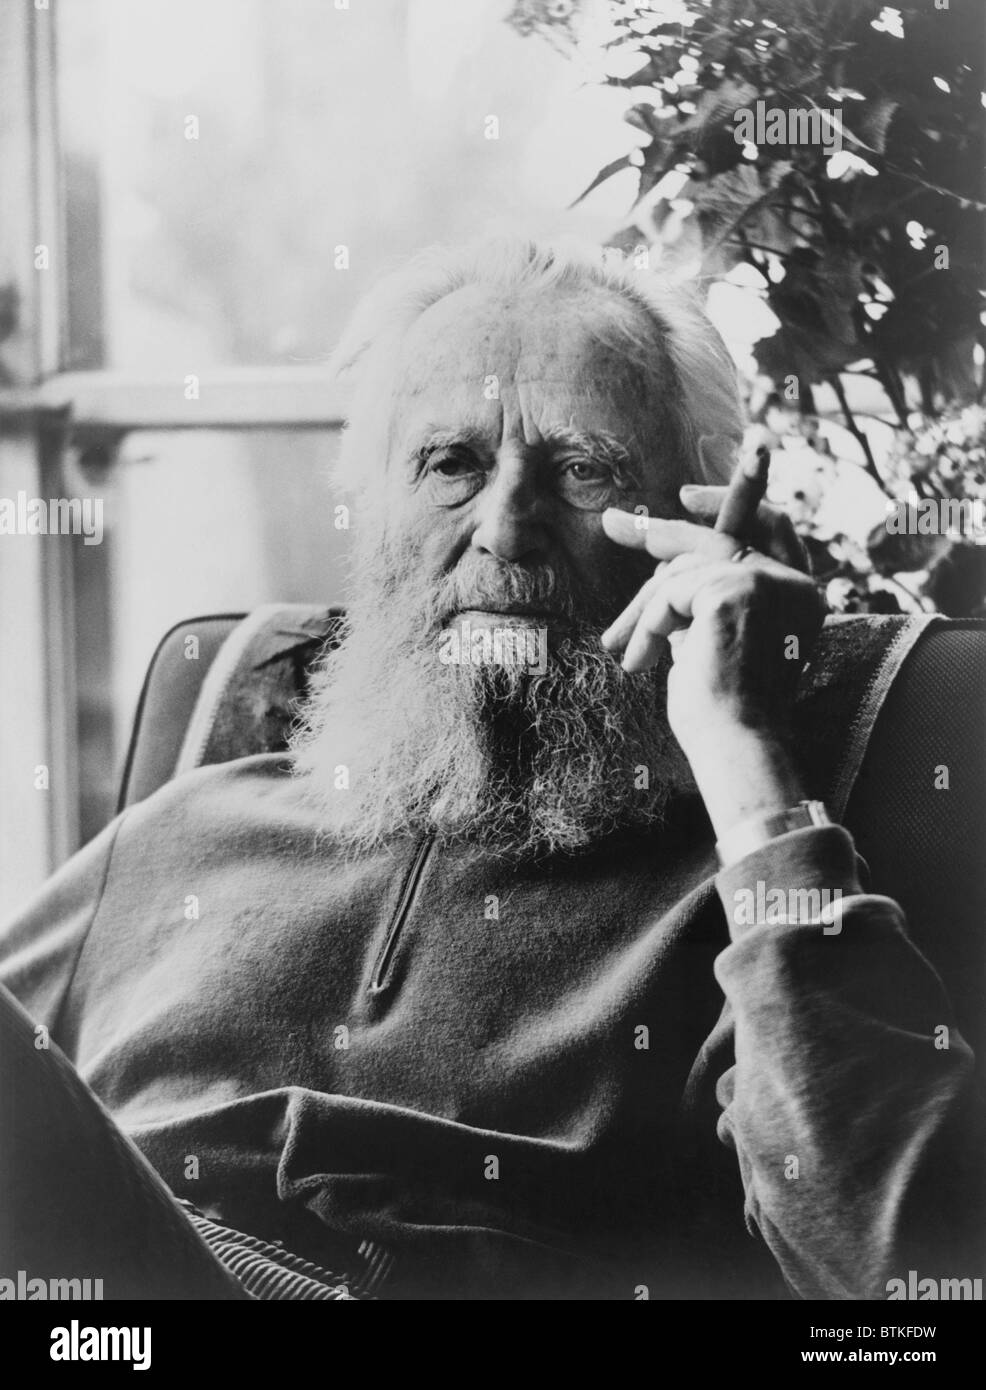 Edward Steichen (1879-1973), der berühmte Fotograf bei 86, raucht eine Zigarre im Jahr 1965. Drei Jahre zuvor veröffentlichte er seine Autobiografie A LIFE IN Fotografie. Stockfoto